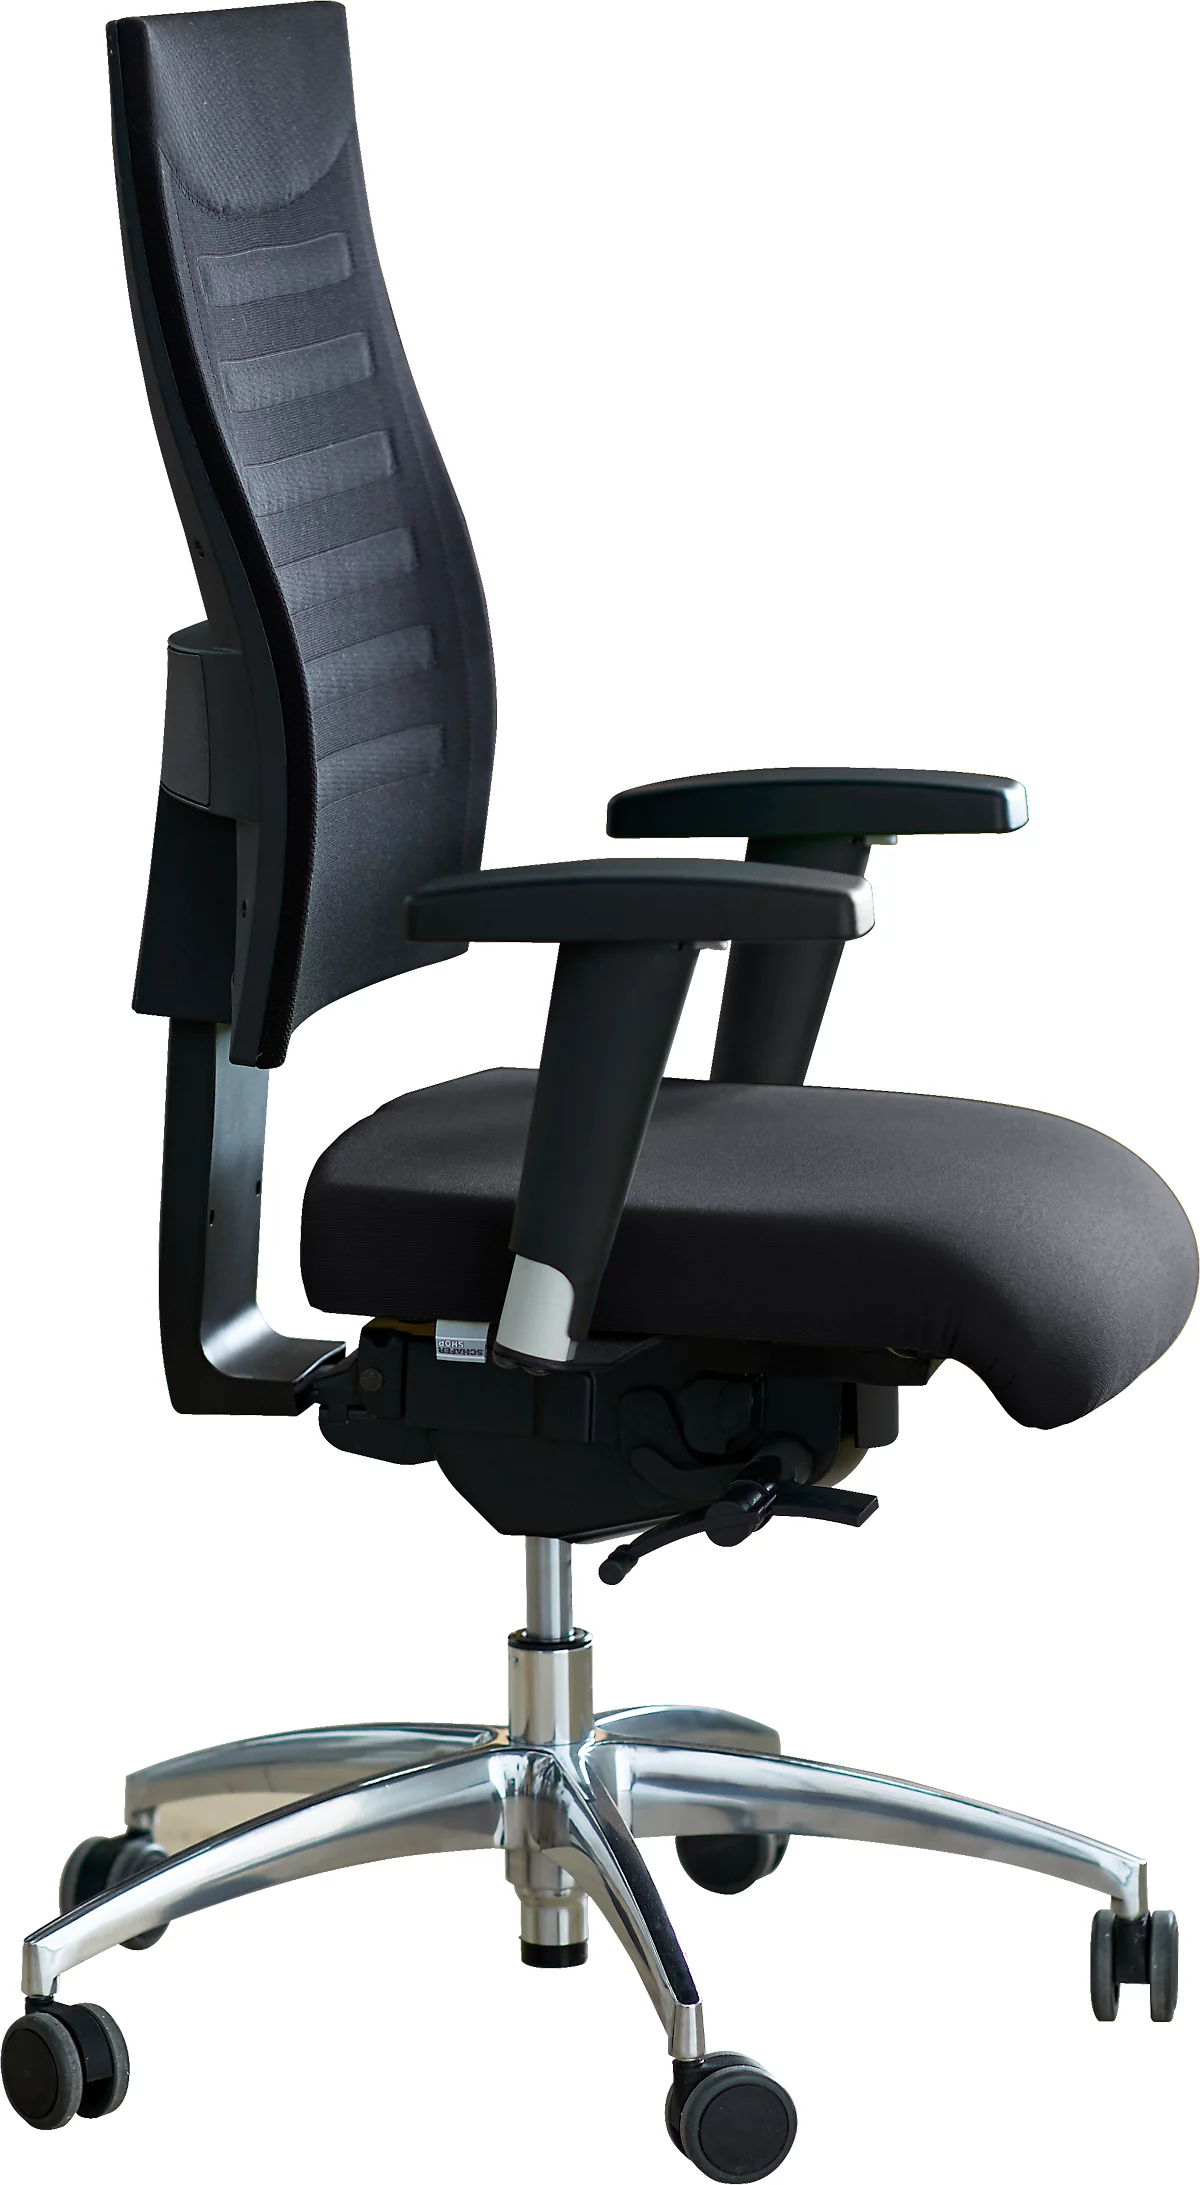 Schäfer Shop Select SSI PROLINE S3+ bureaustoel, met armleuningen, 3D synchroonmechanisme, vlakke zitting, 3D netrugleuning, zwart/zilver